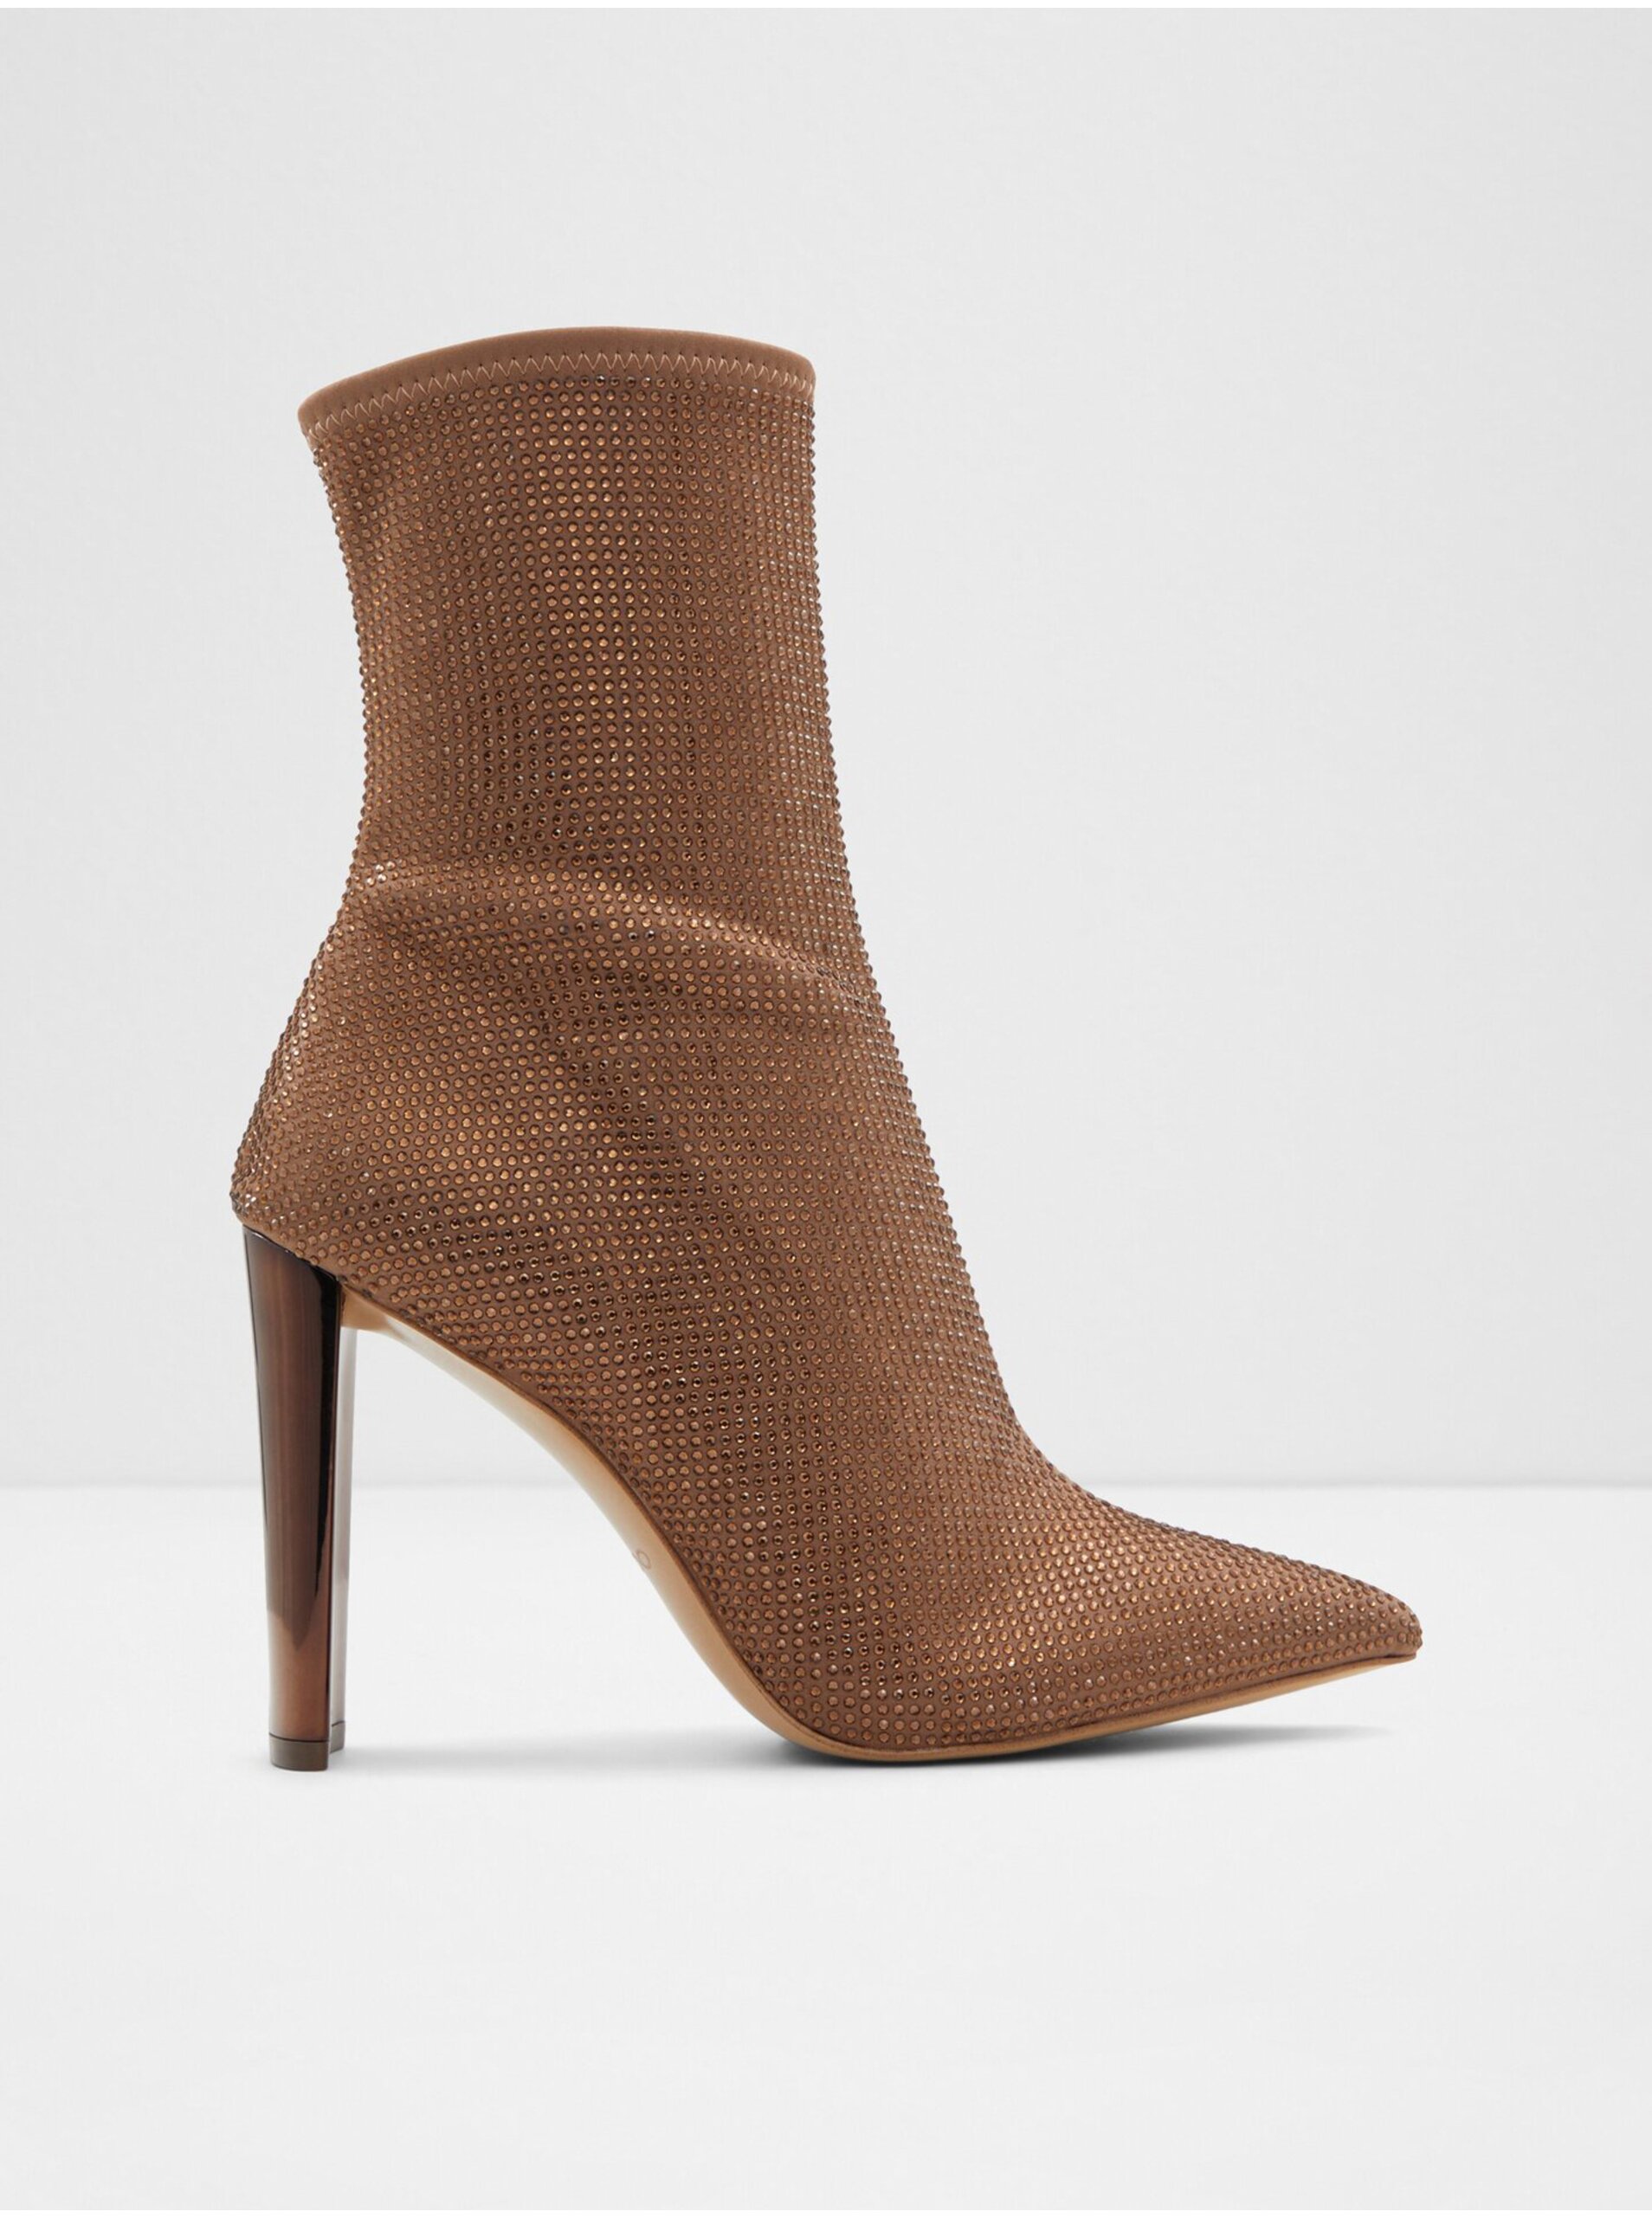 E-shop Hnedé dámske členkové topánky s ozdobnými kamienkami ALDO Dove